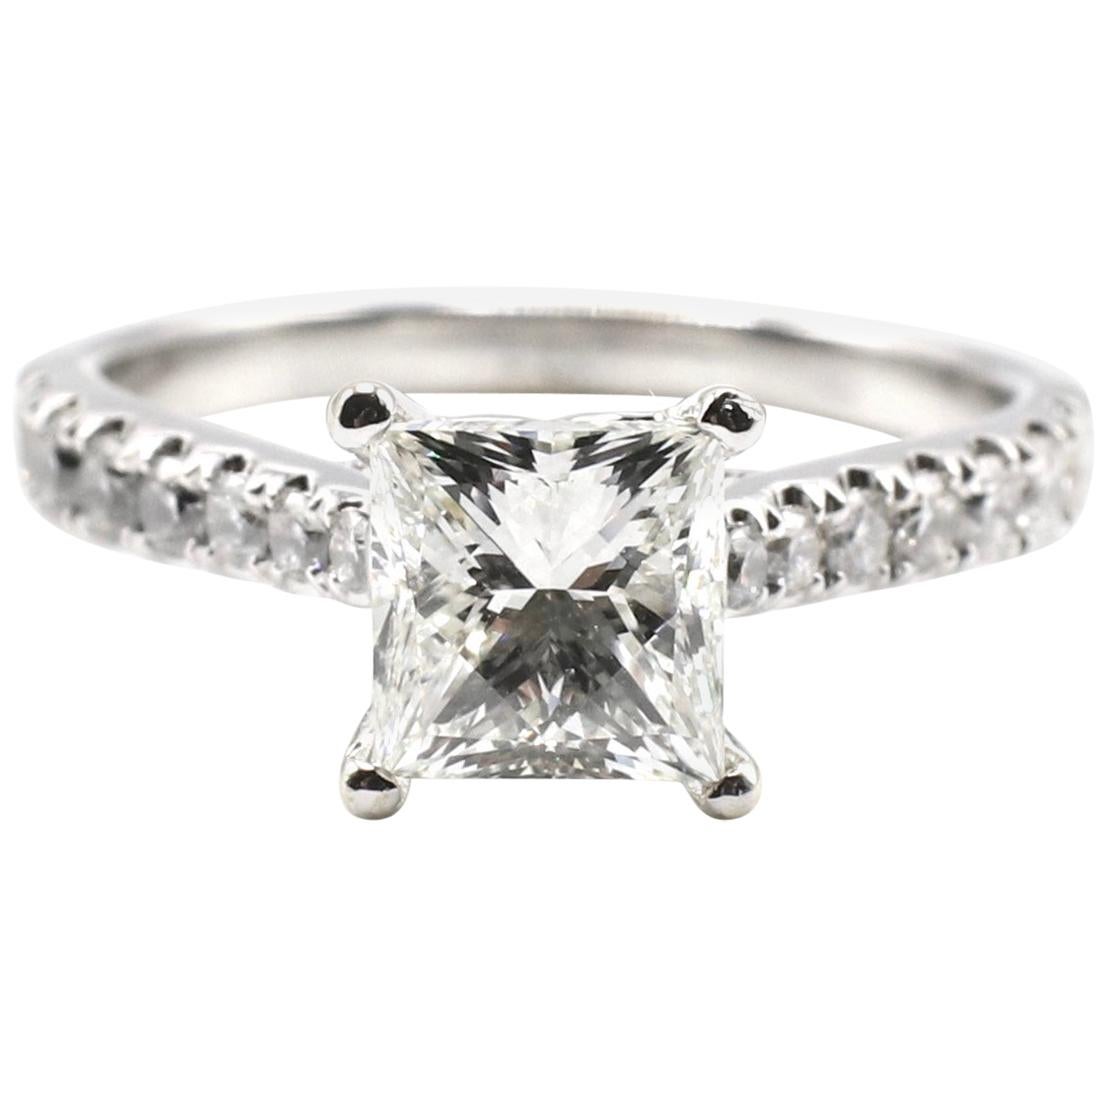 IGI Certified 1.48 Carat I VS1 Princess Cut 18 Karat White Gold Diamond Ring